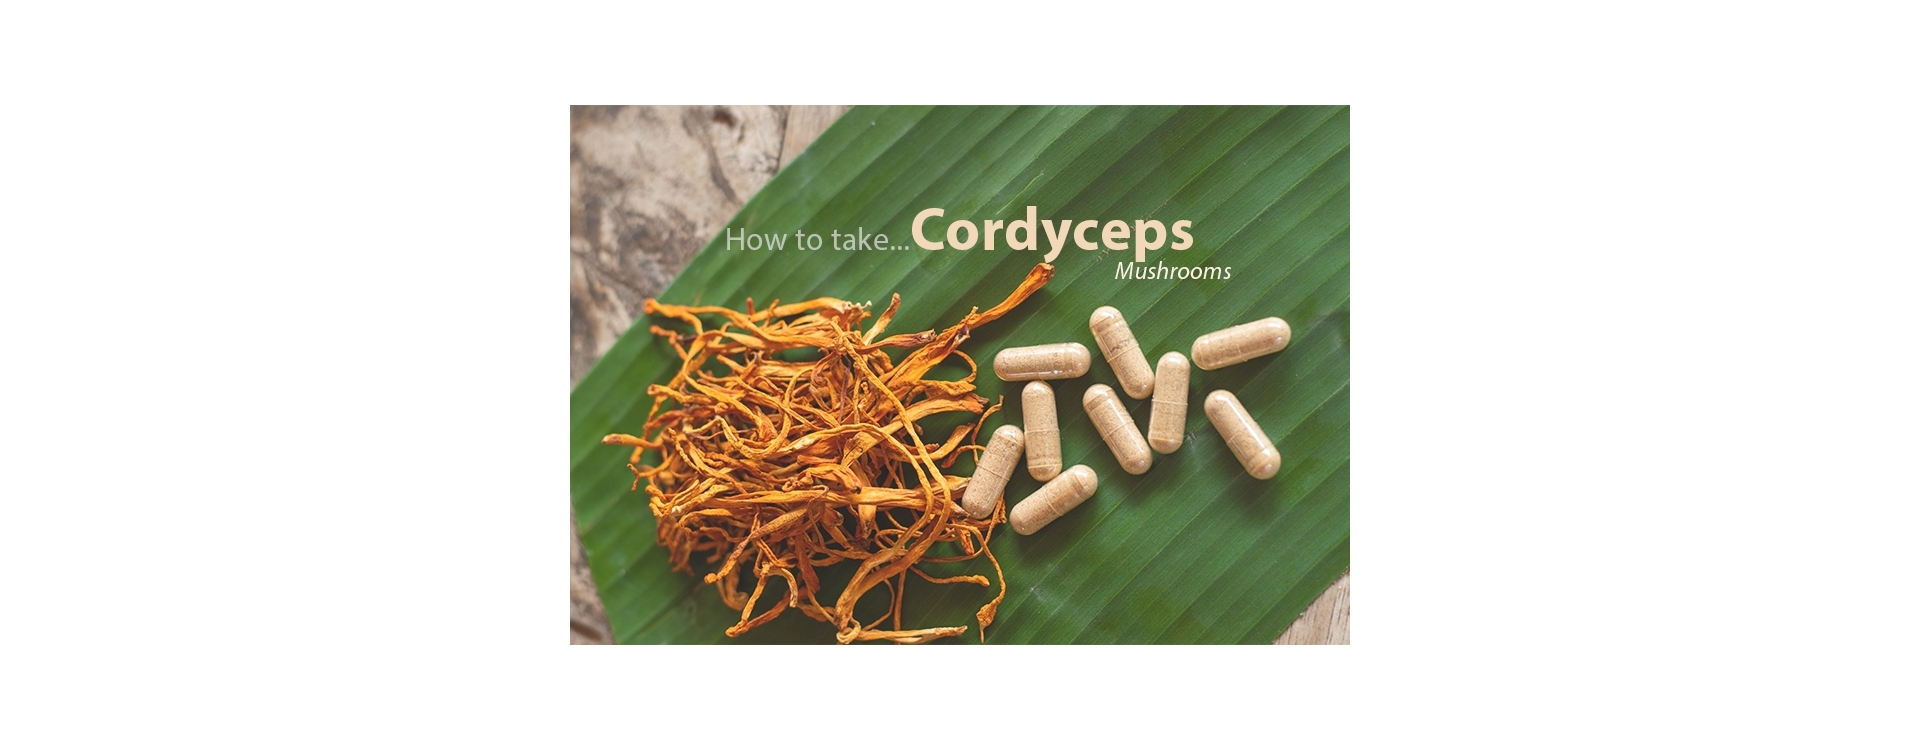 How to take Cordyceps Mushroom